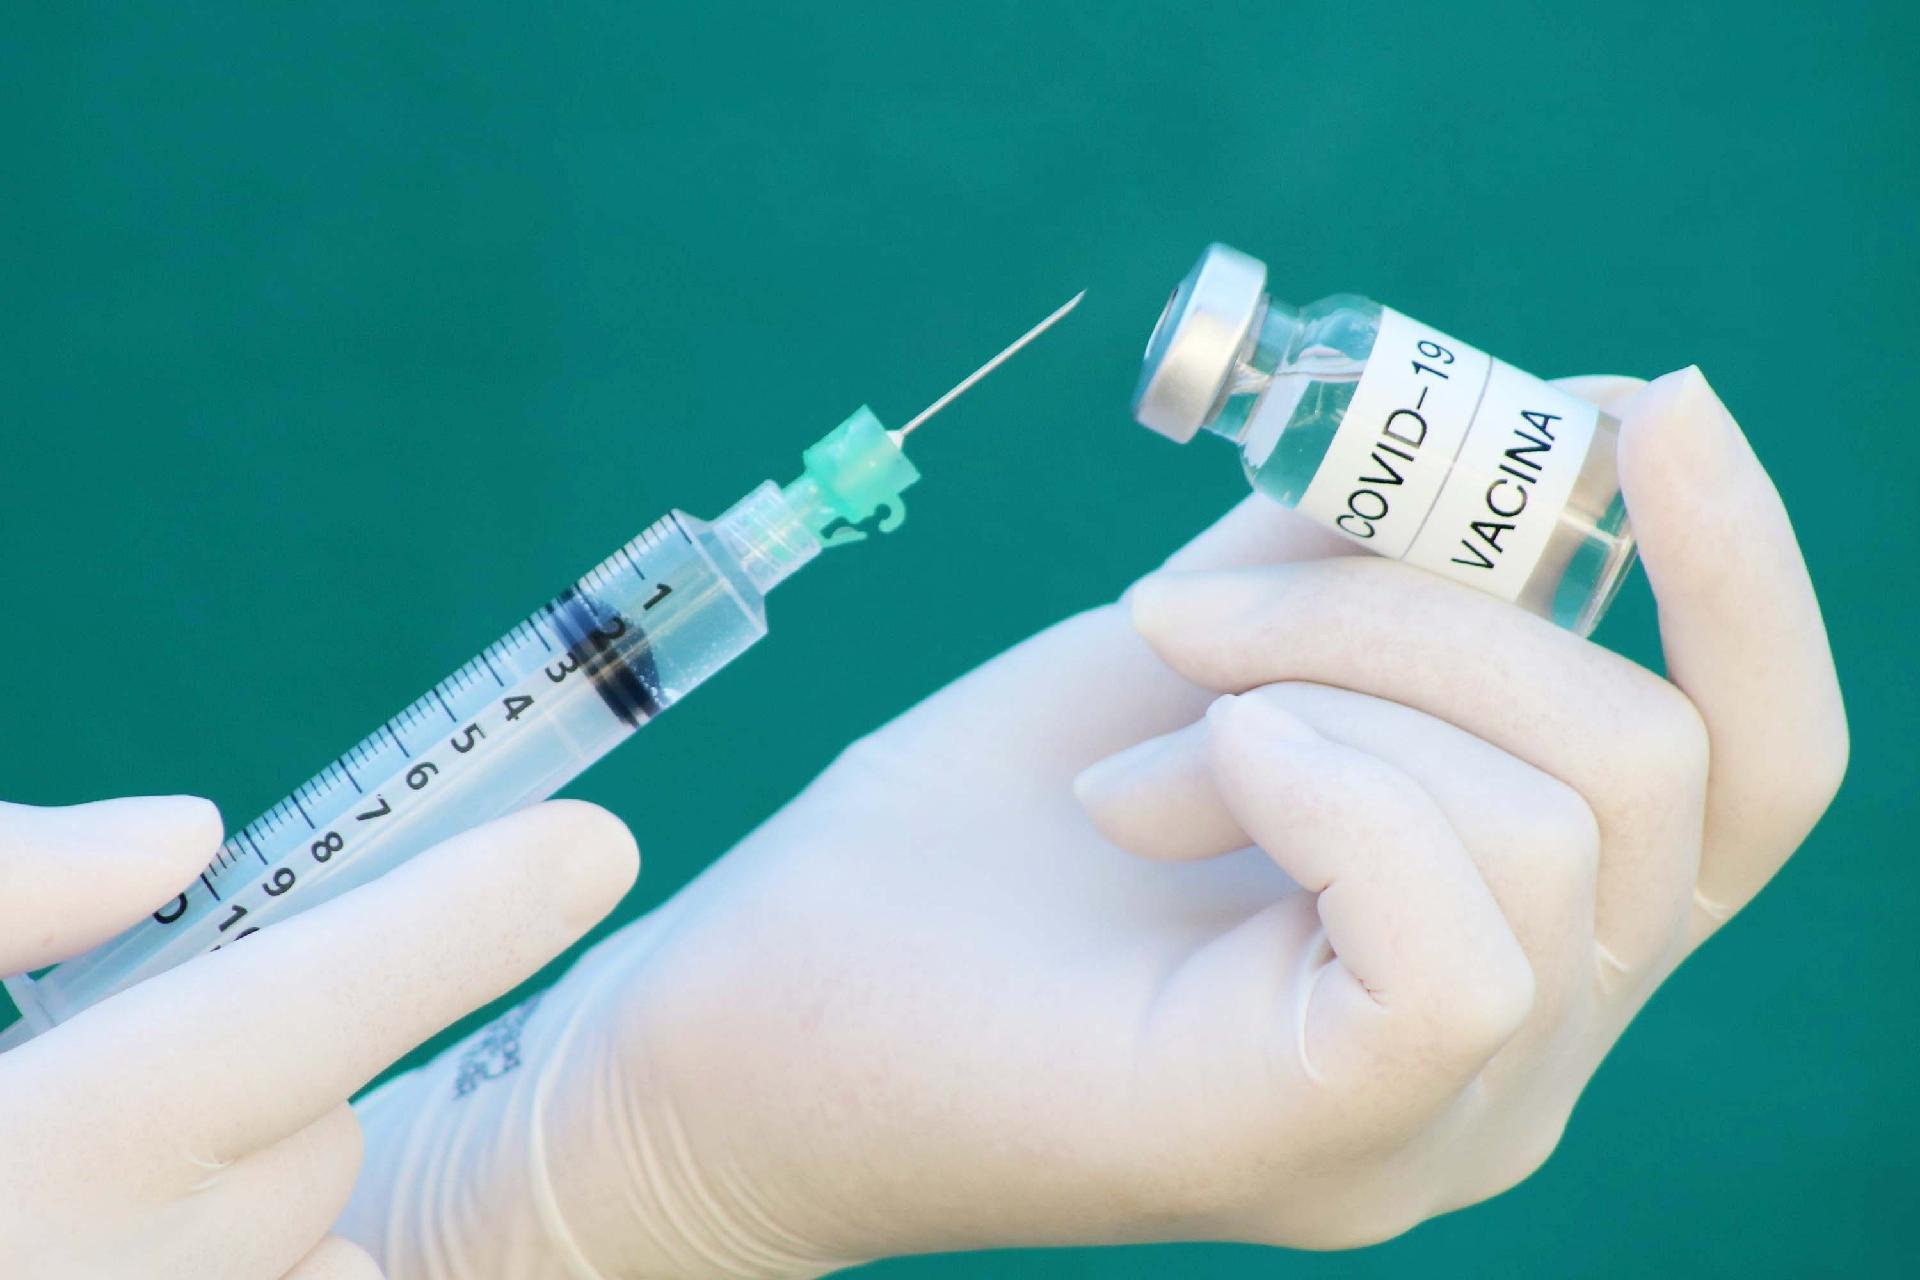 Rússia conclui testes clínicos e é país mais próximo da vacina